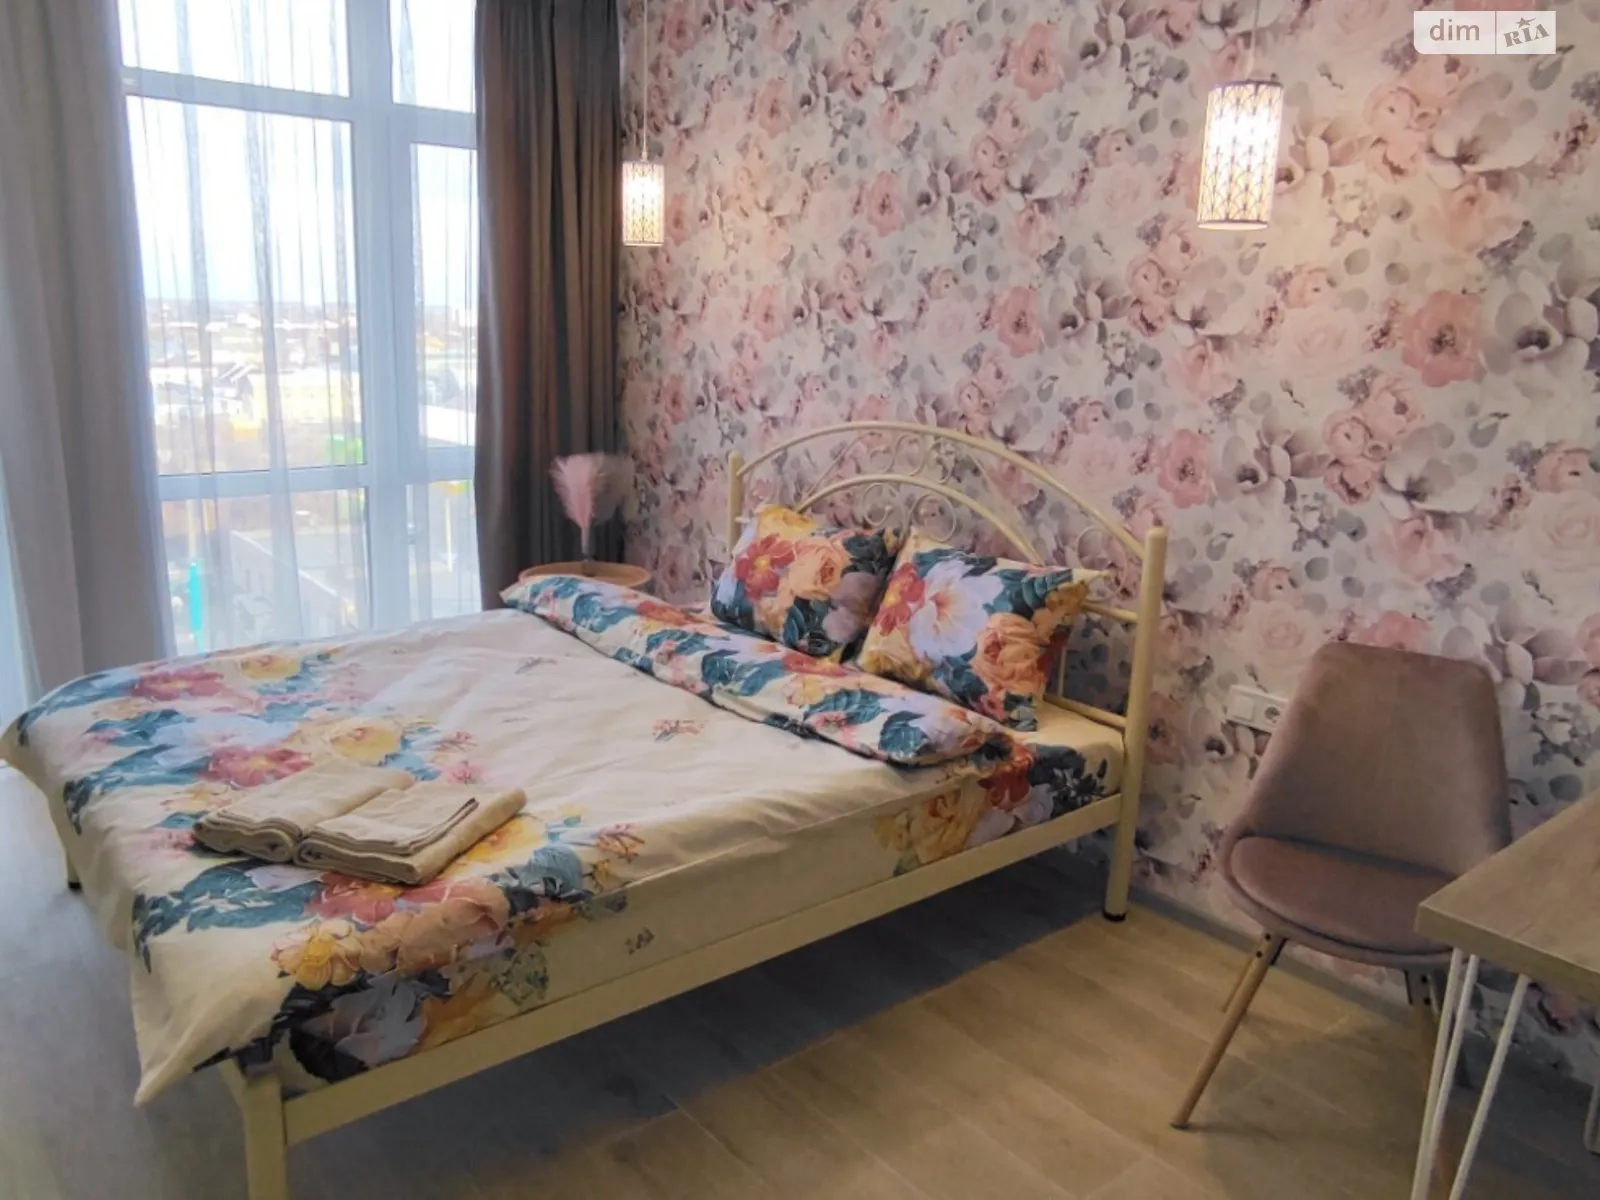 Здається в оренду 1-кімнатна квартира у Житомирі, цена: 1200 грн